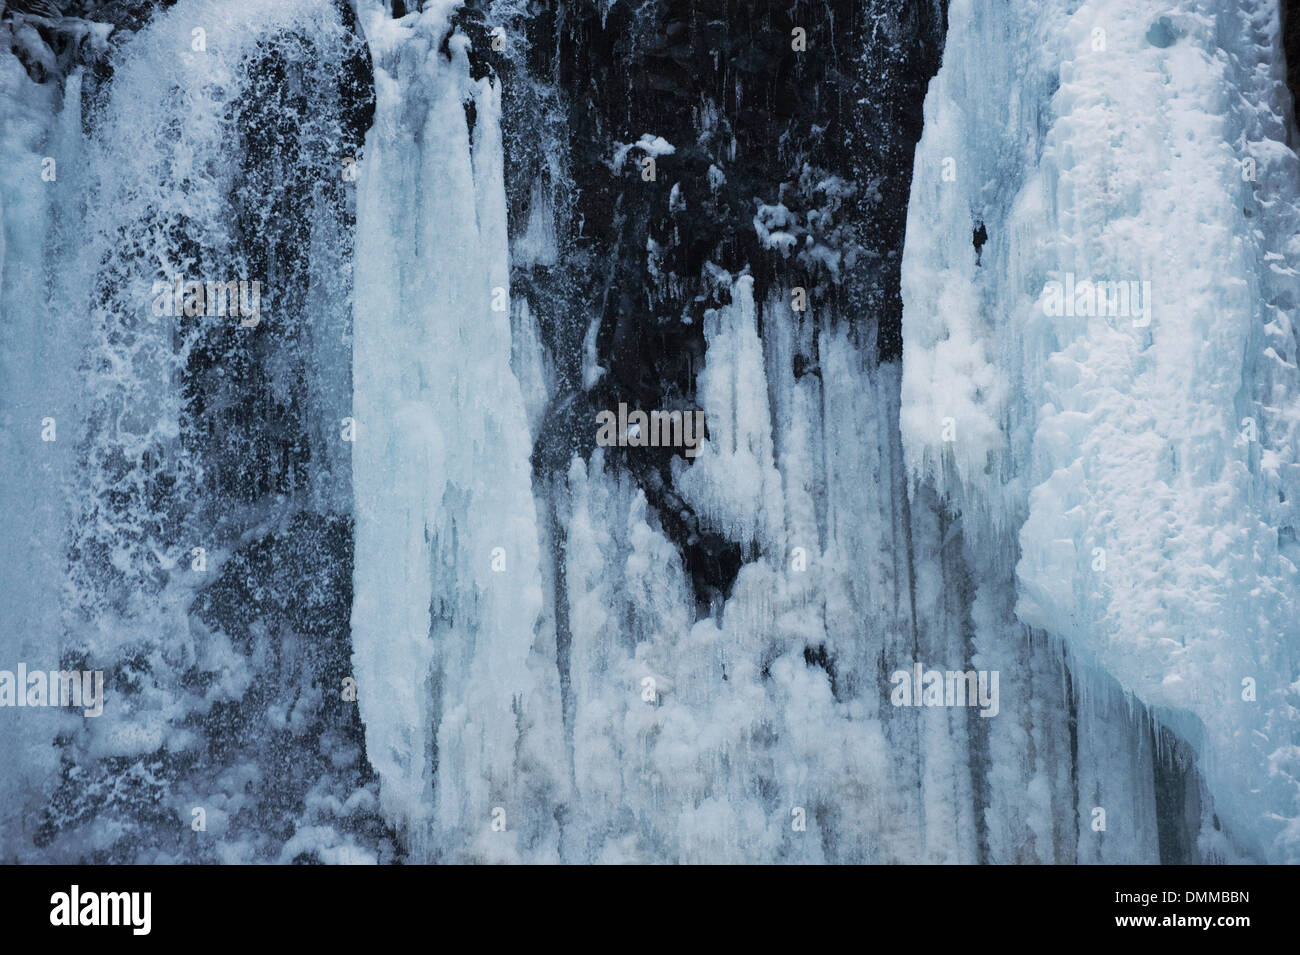 Dettaglio del semi-congelato a cascata non Zengoro Taki, Monte Norikura. Foto Stock